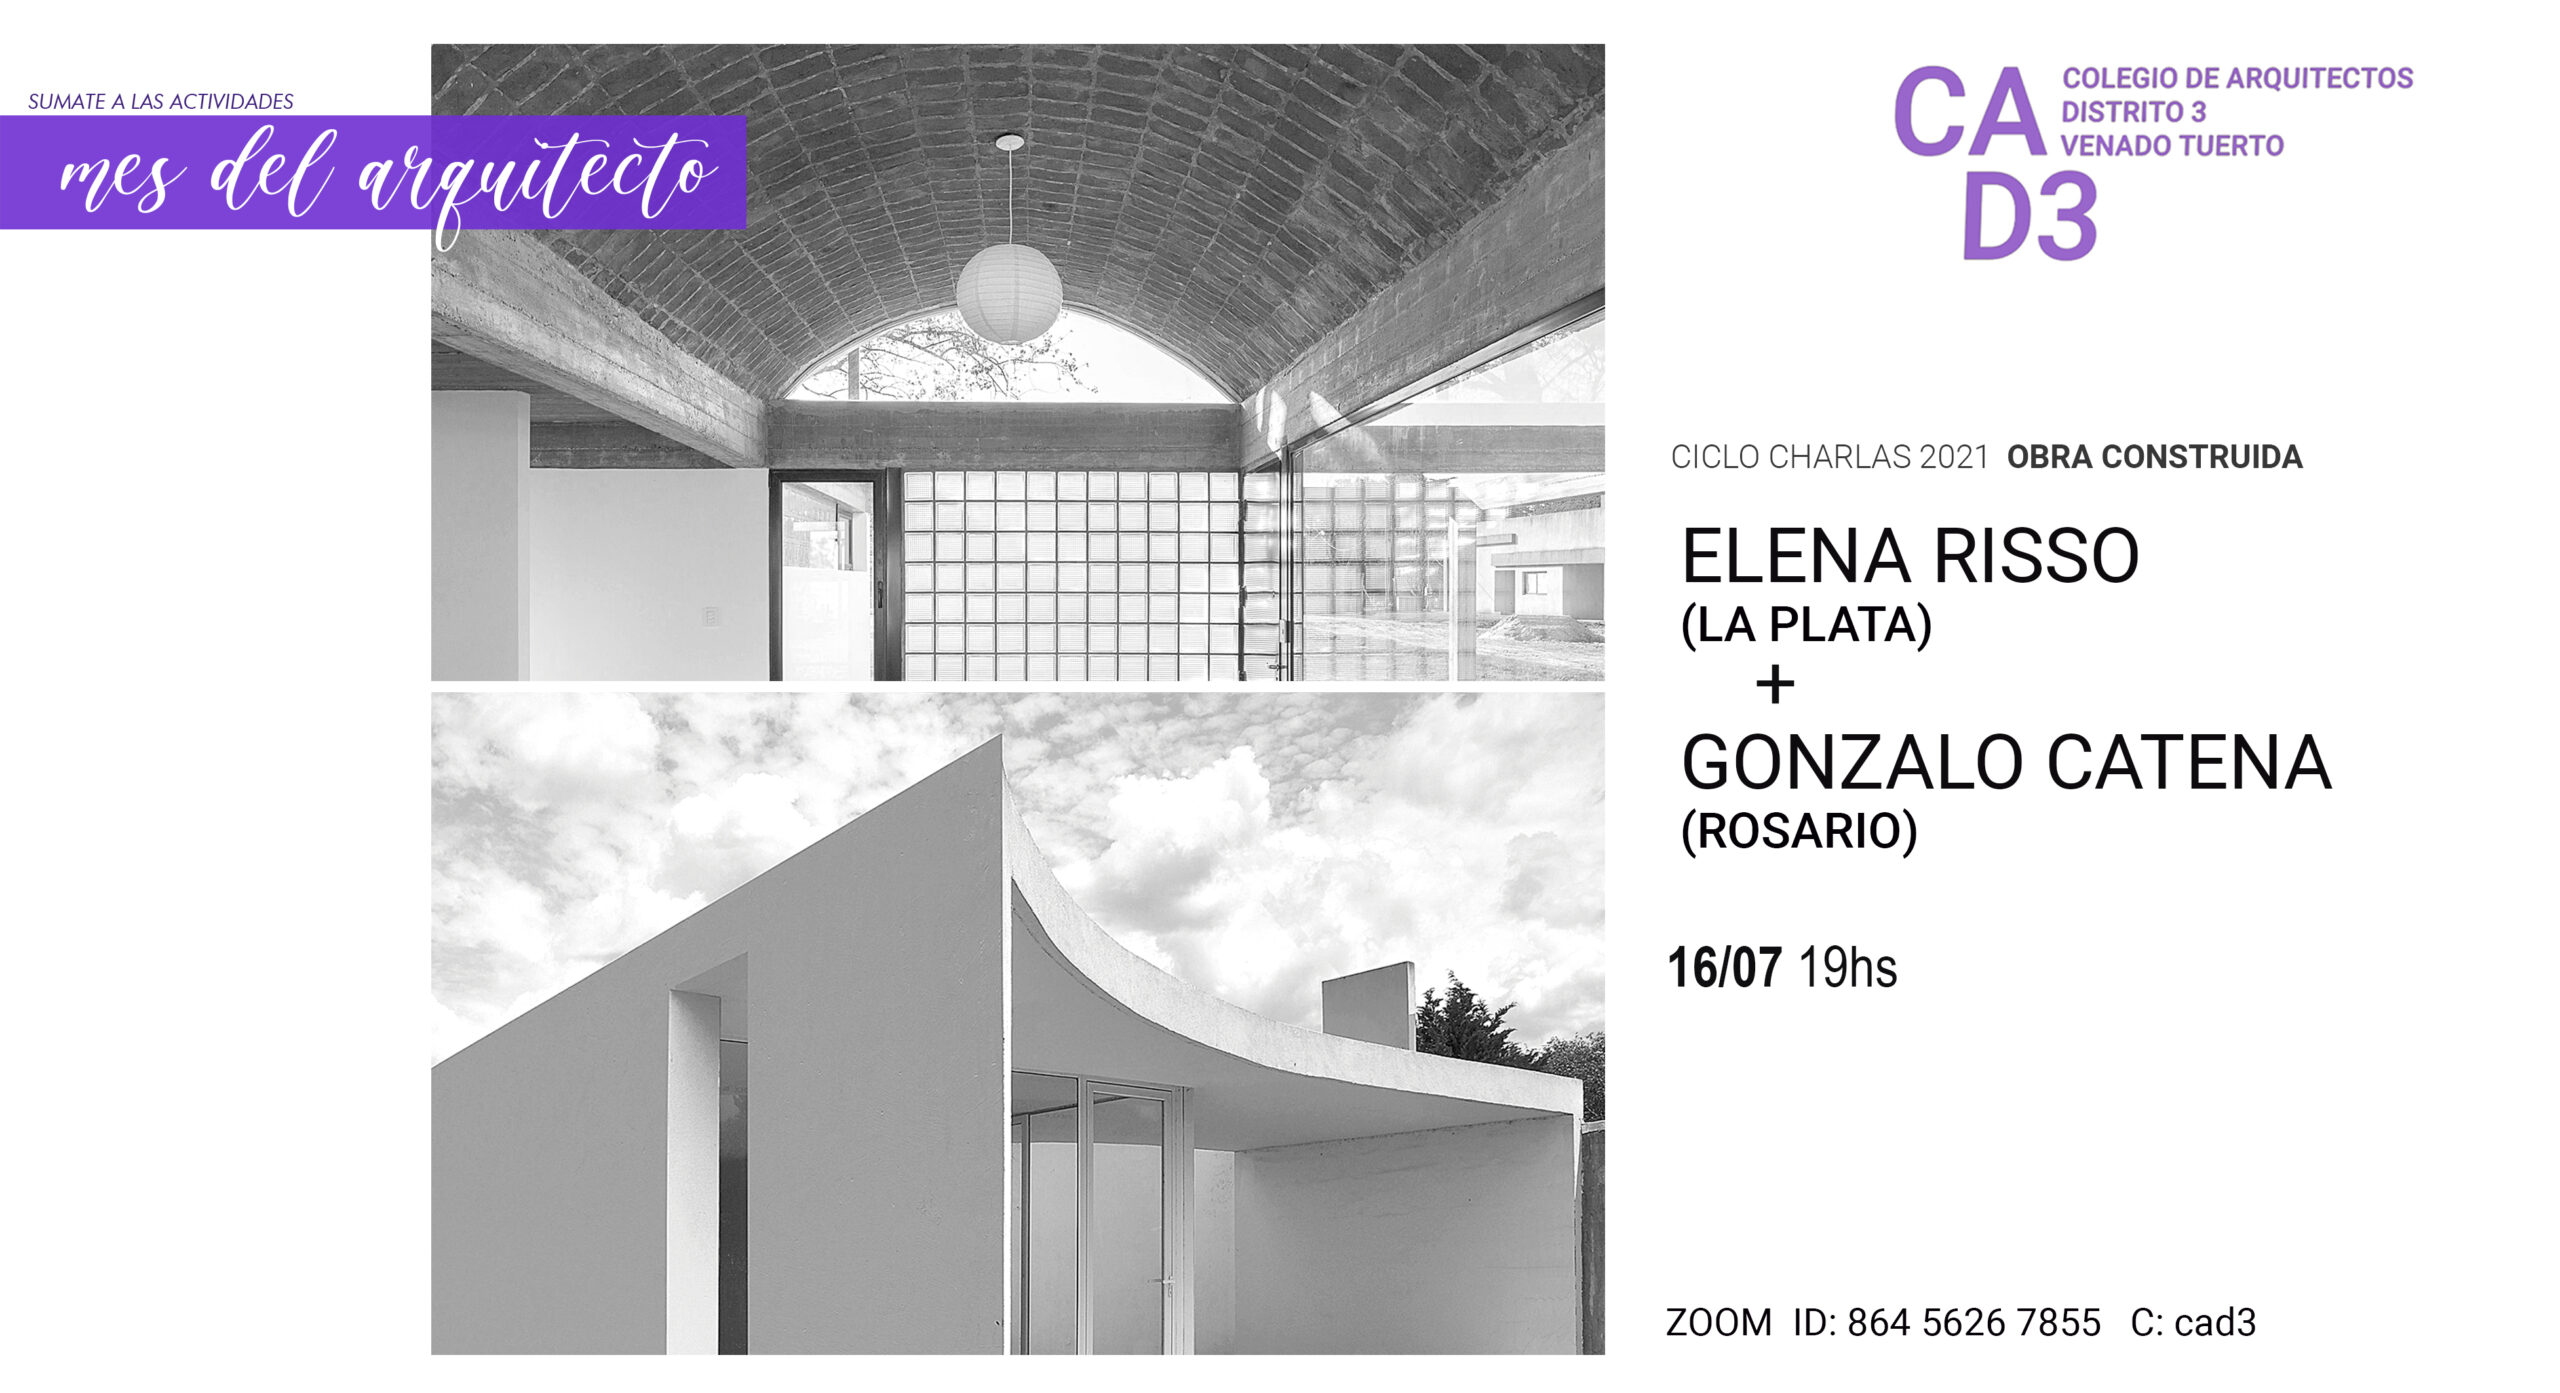 CICLO DE CHARLAS 2021 – ELENA RISSO (LA PLATA) + GONZALO CATENA (ROSARIO)